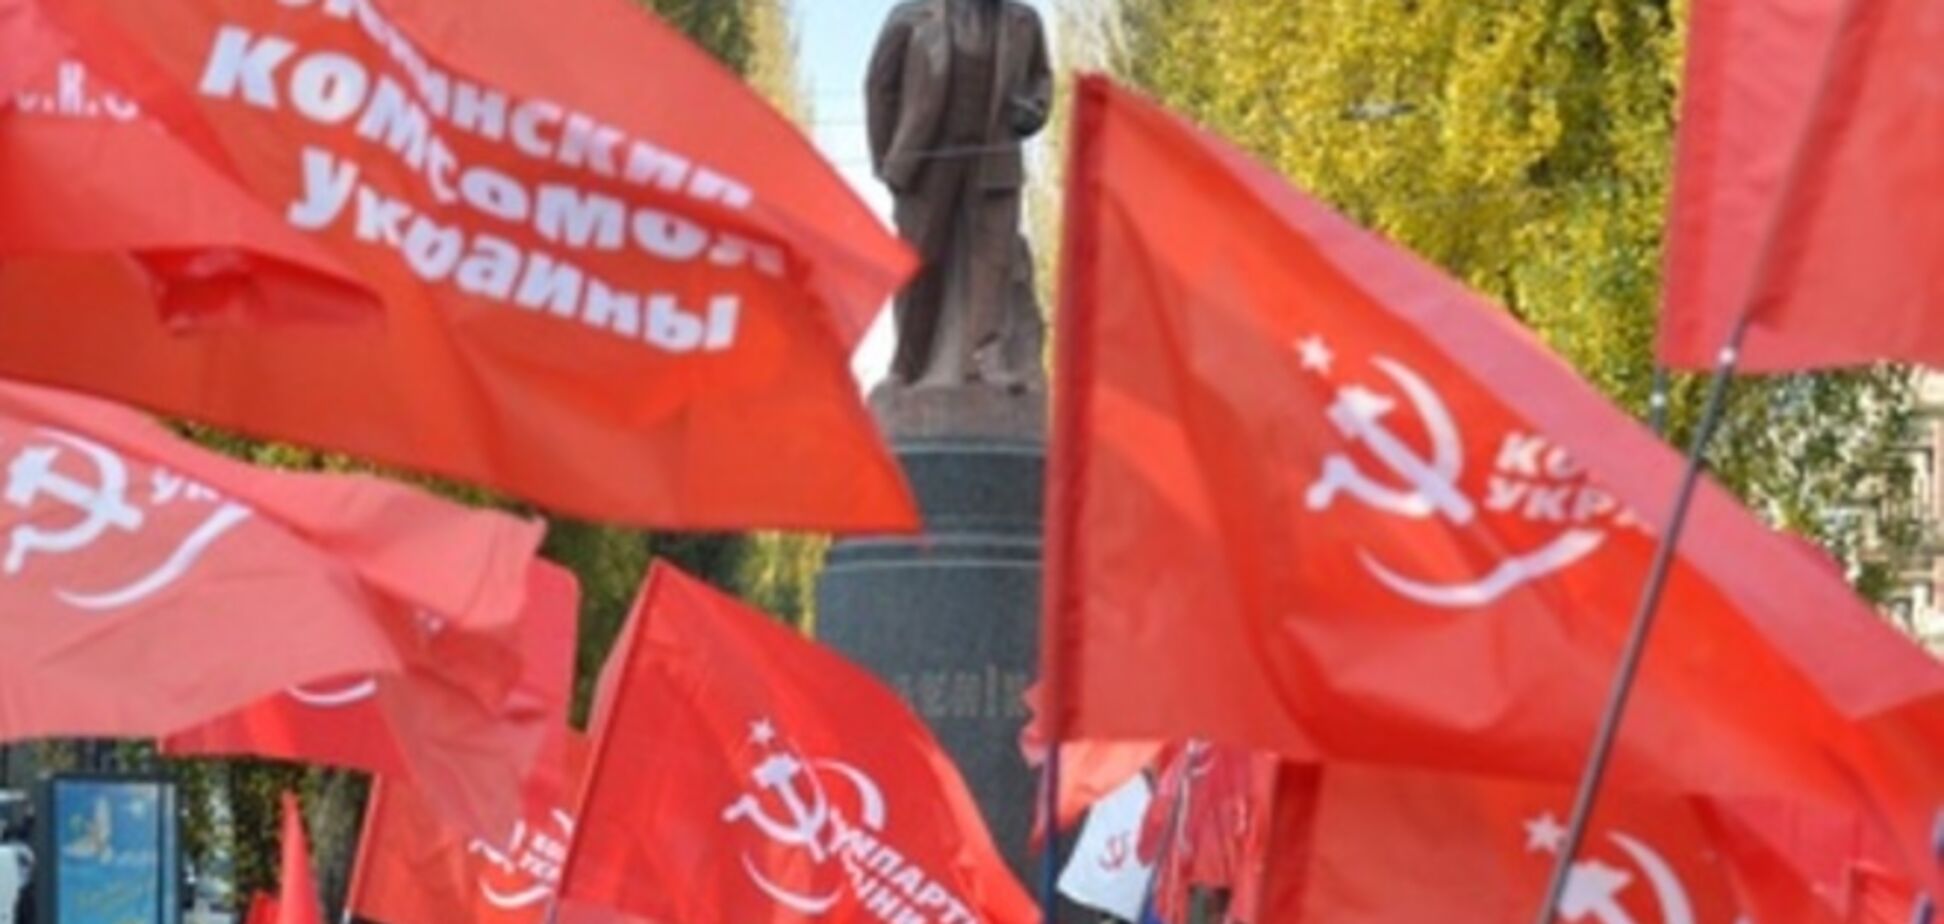 Европейские коммунисты выразили объединенный протест относительно запрета КПУ